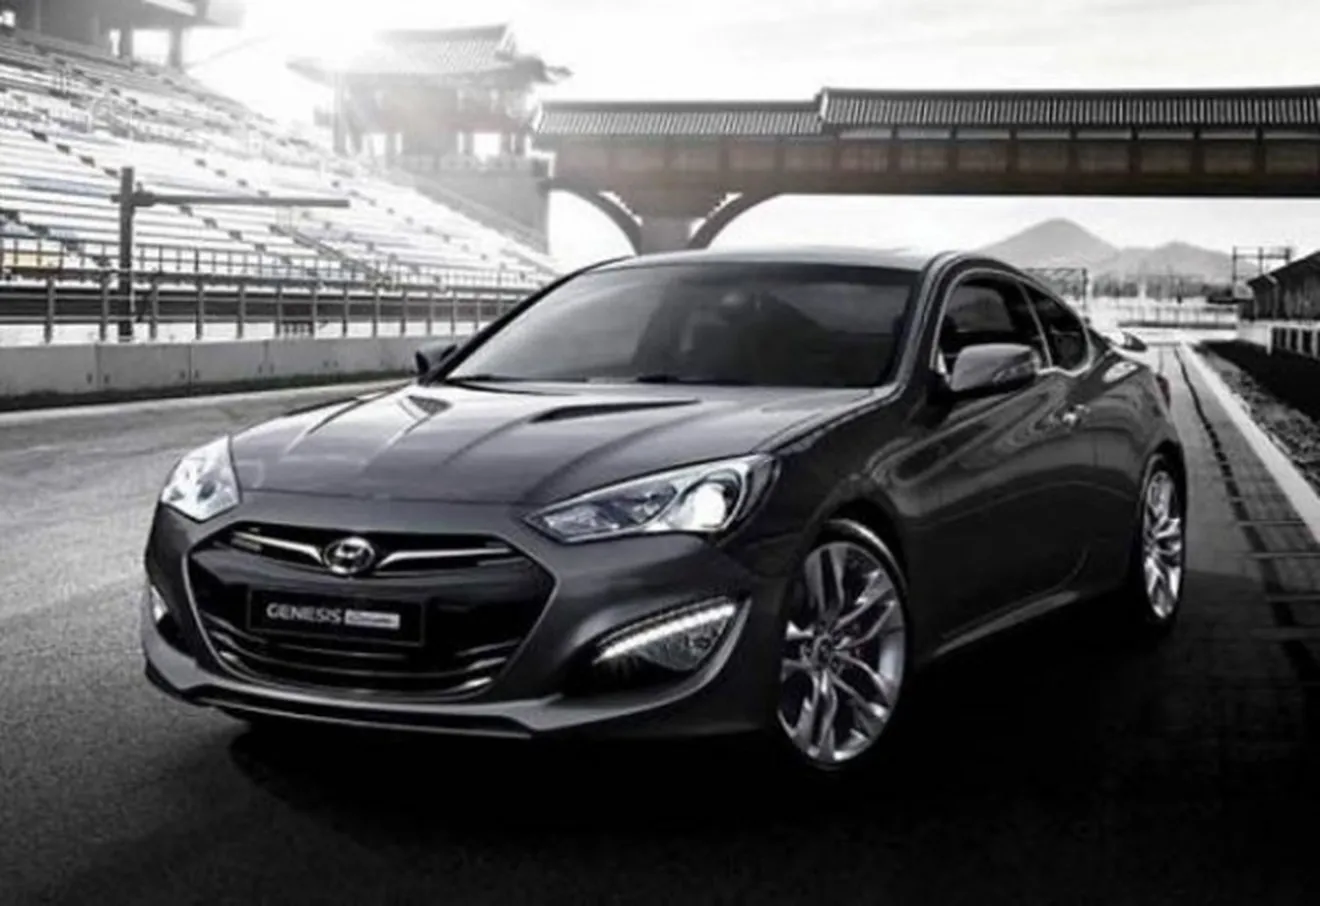 El Hyundai Genesis Coupé 2012 al descubierto